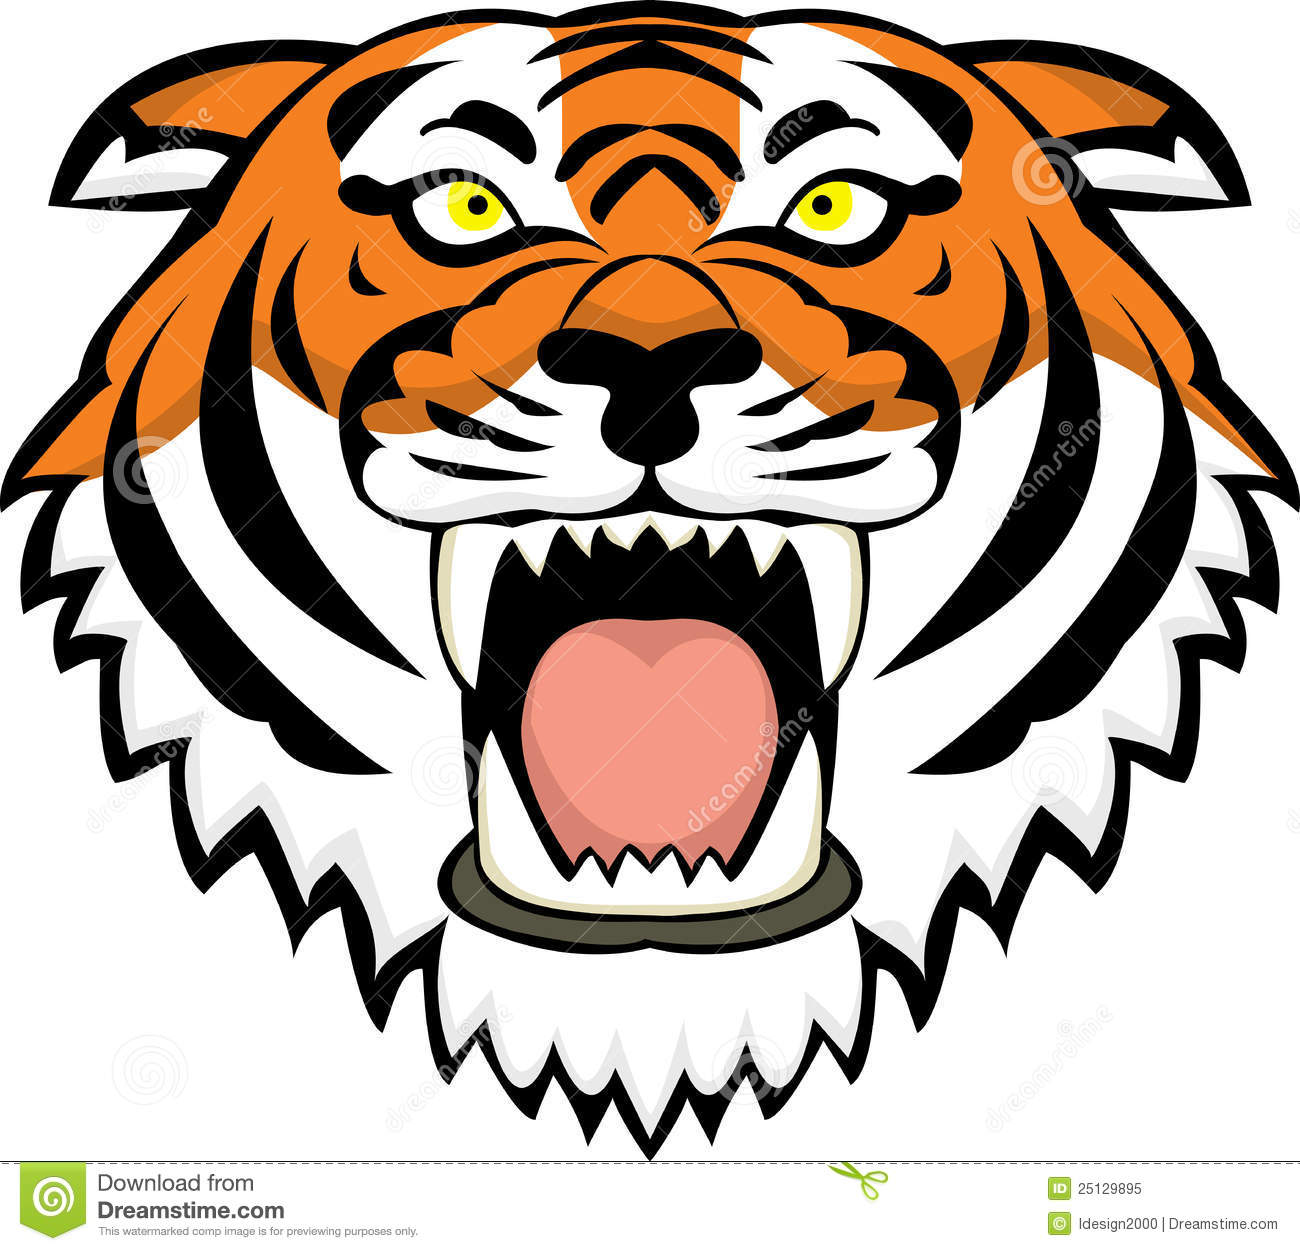 Tiger head clipart free - Cli